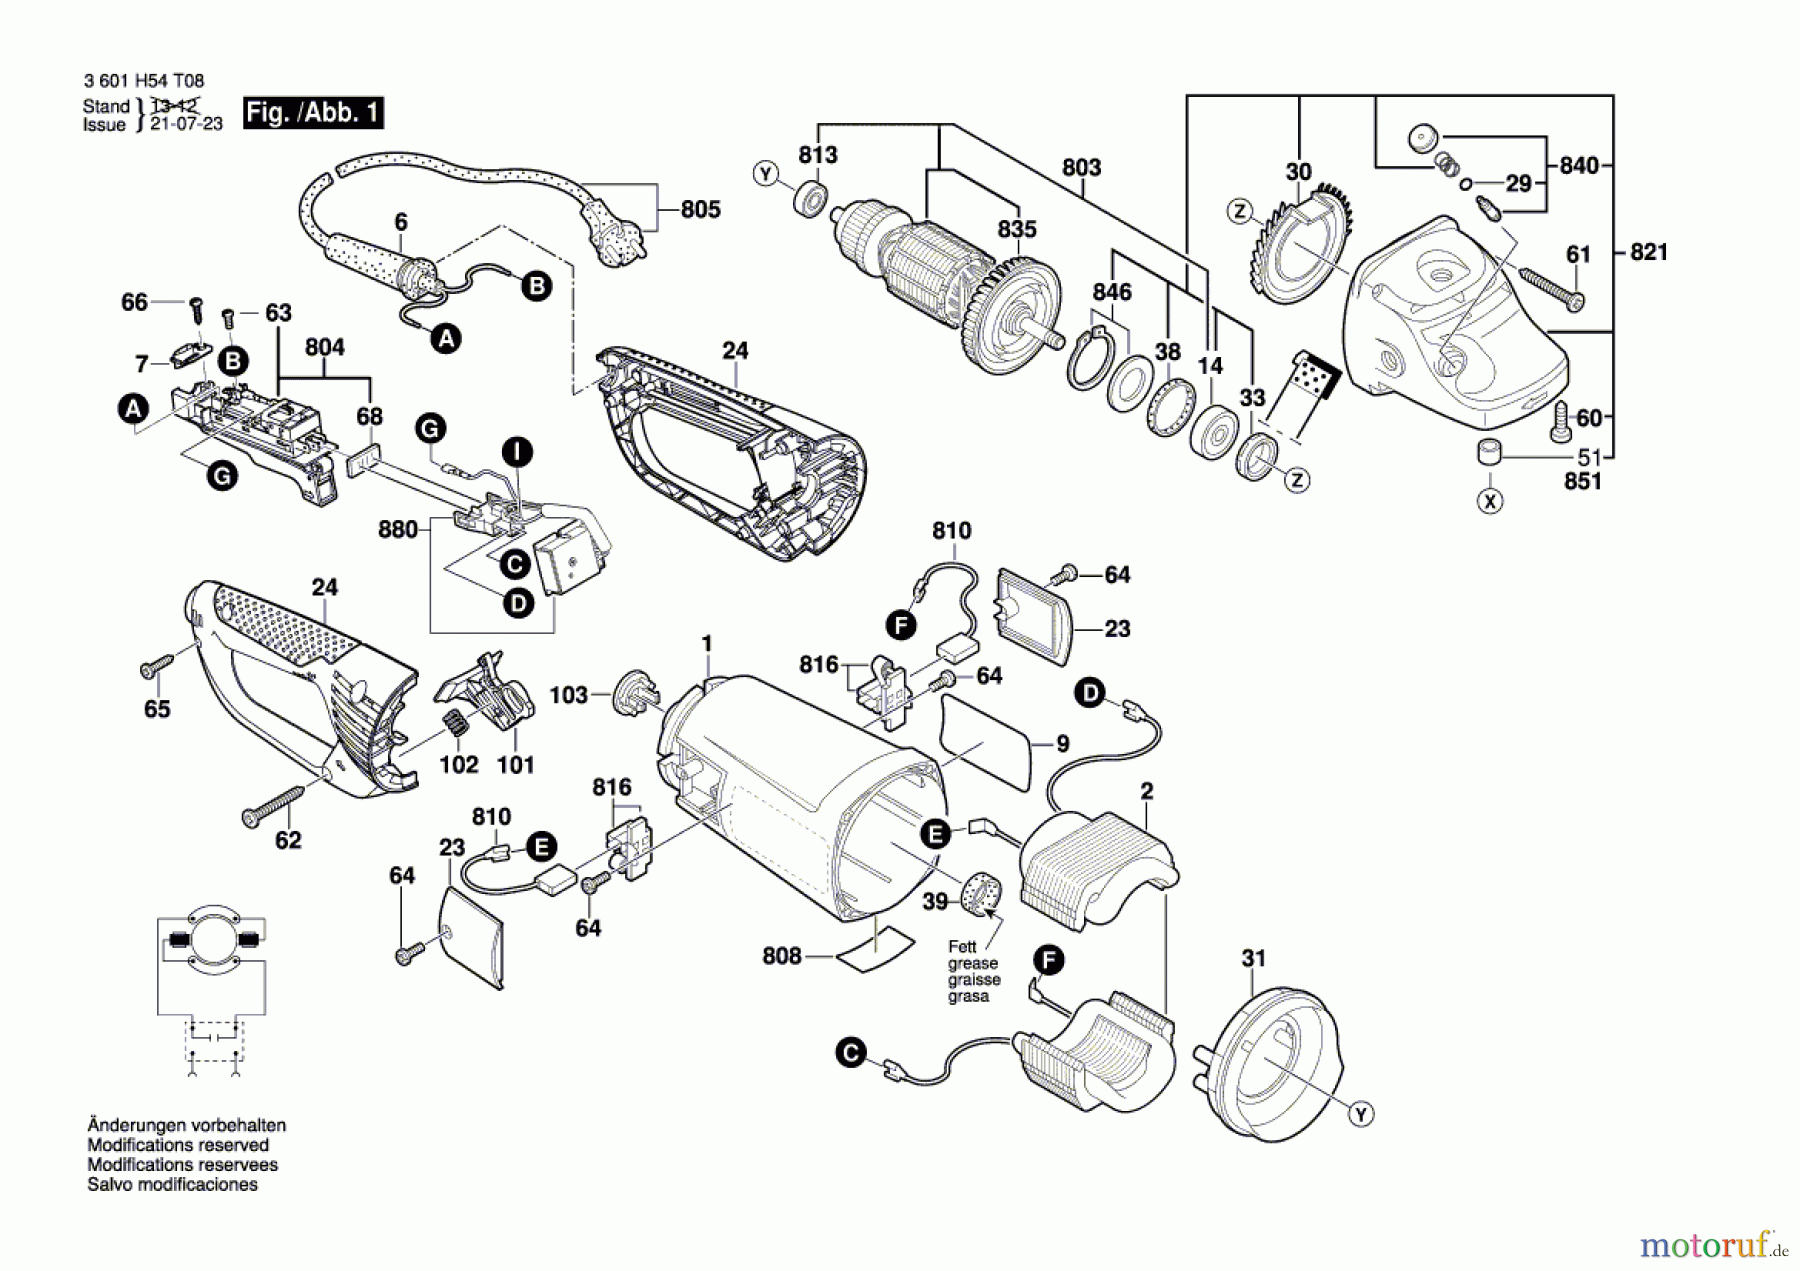  Bosch Werkzeug Winkelschleifer WKS 230 E Seite 1